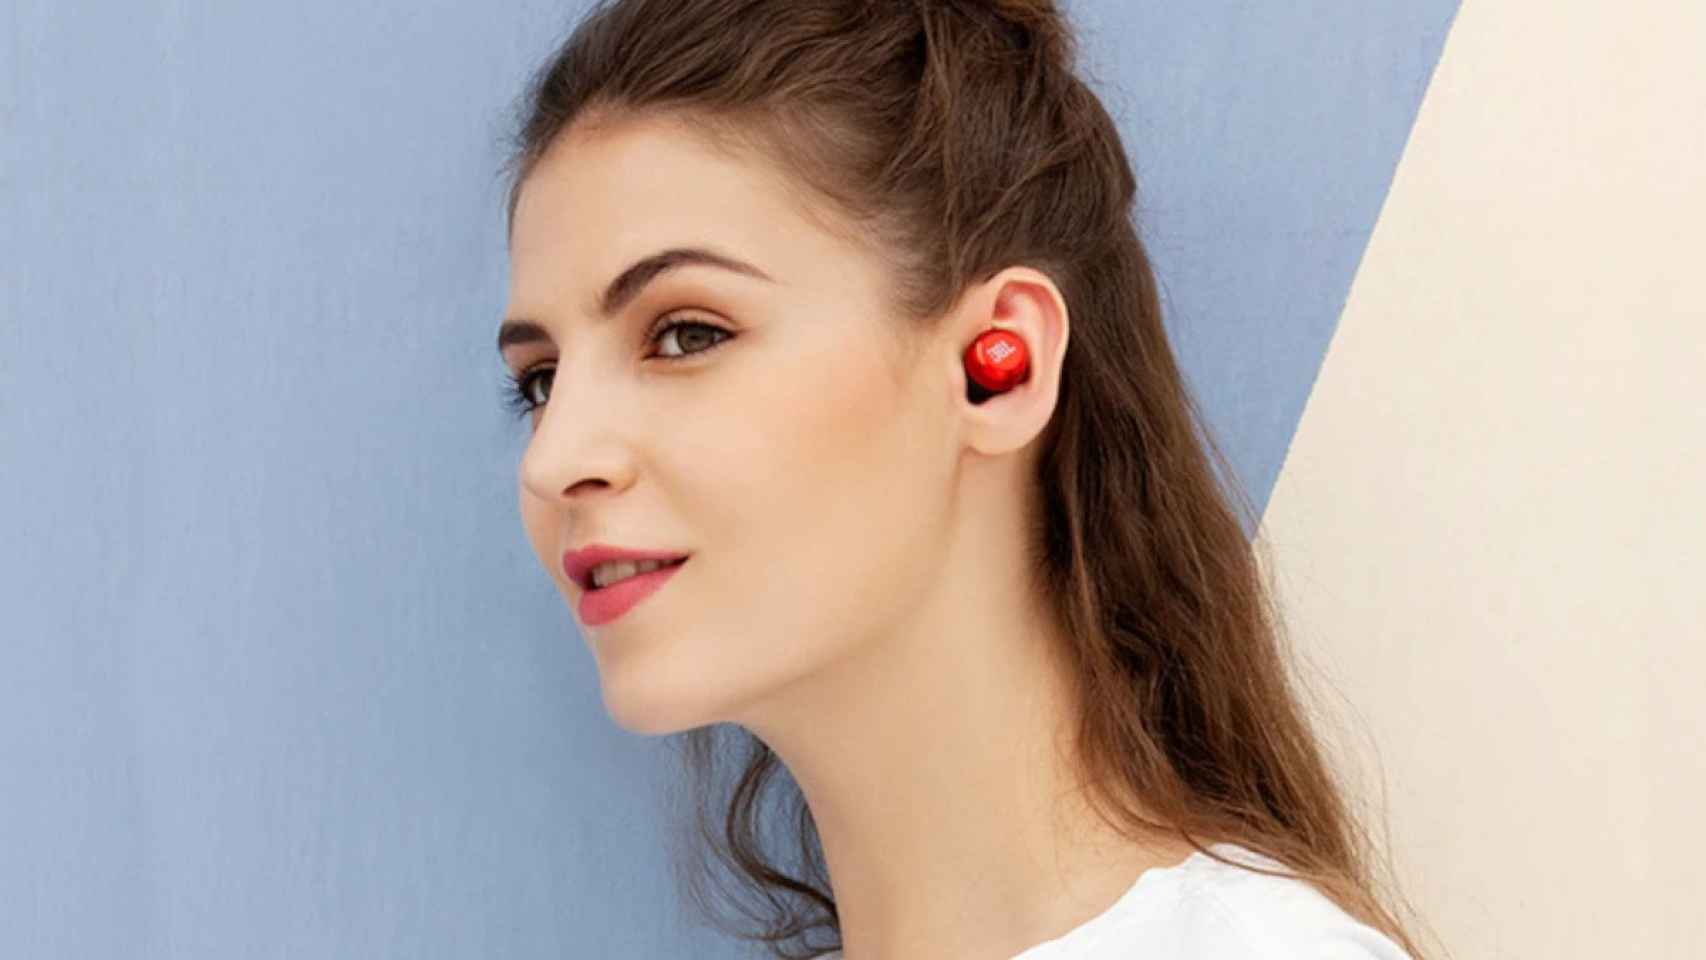 Aniversario Aliexpress: estos auriculares inalámbricos JBL y mucho más ¡a precios increíbles!